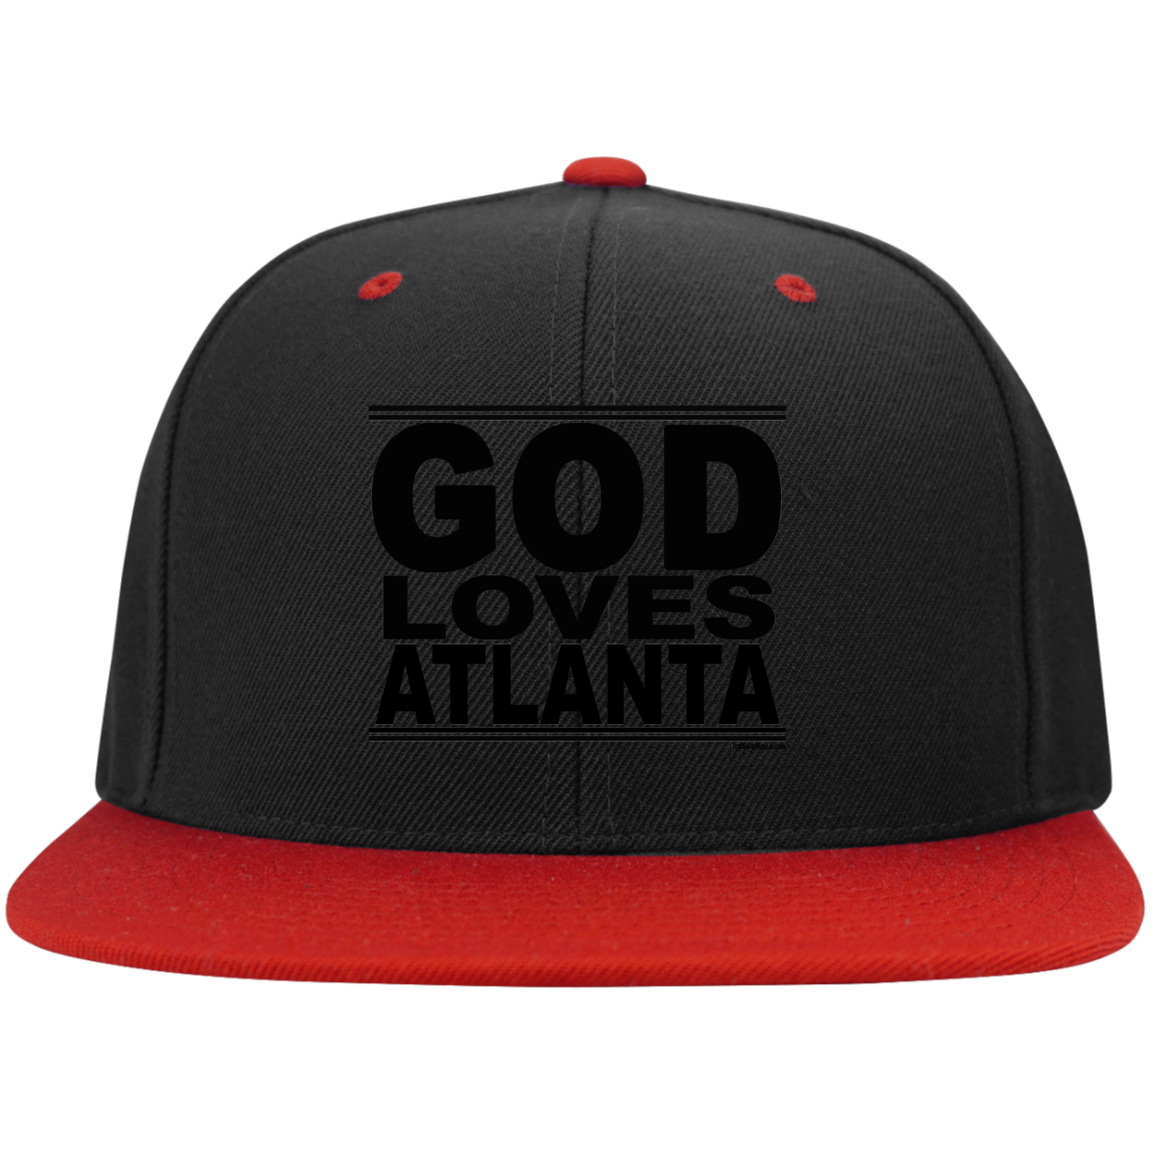 #GodLovesAtlanta - Snapback Hat